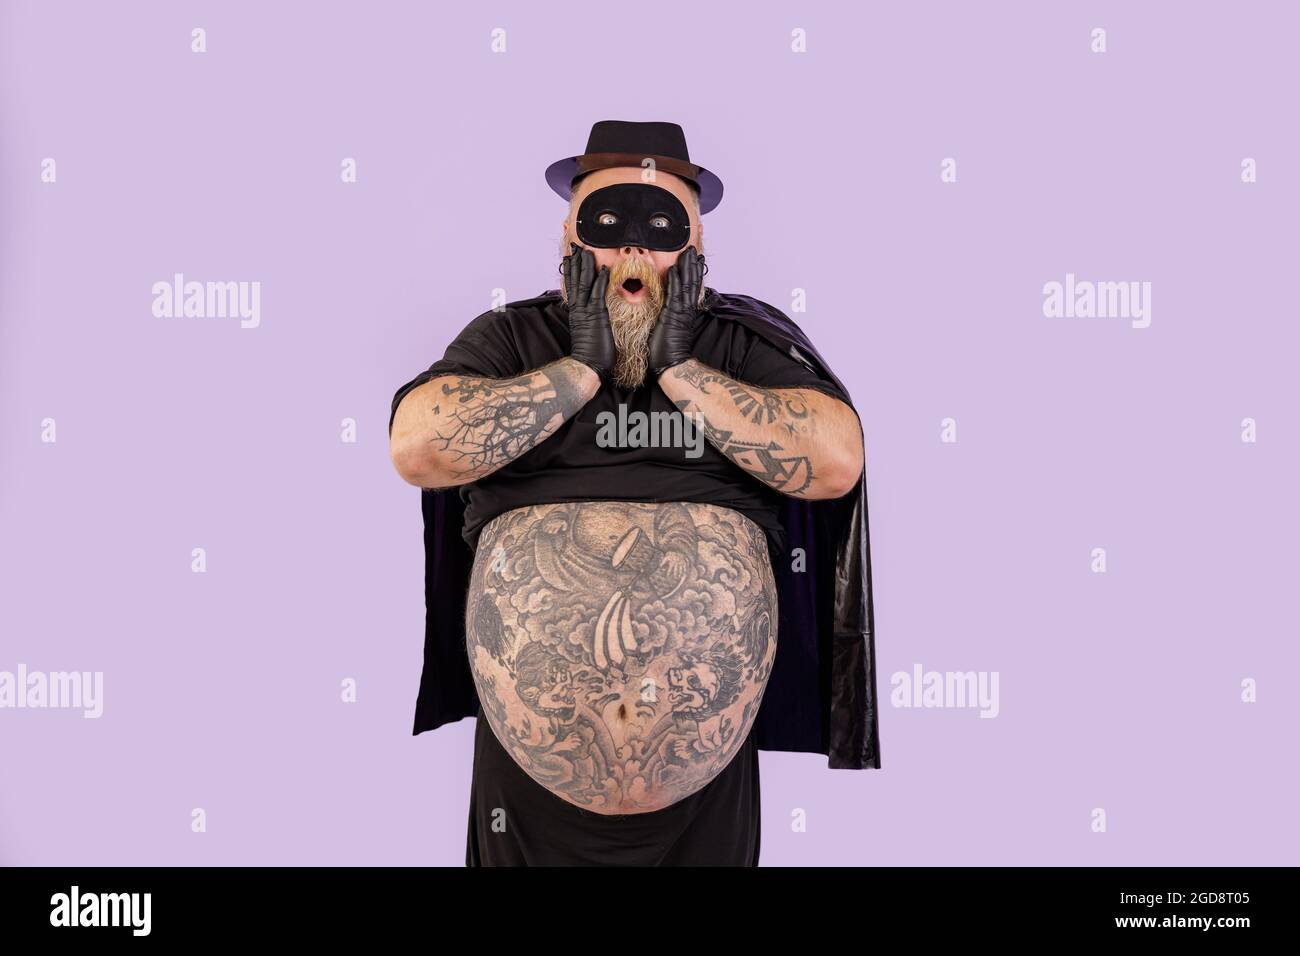 Schockiert plump Mann im Helden Kostüm hält Wangen stehen auf lila  Hintergrund Stockfotografie - Alamy